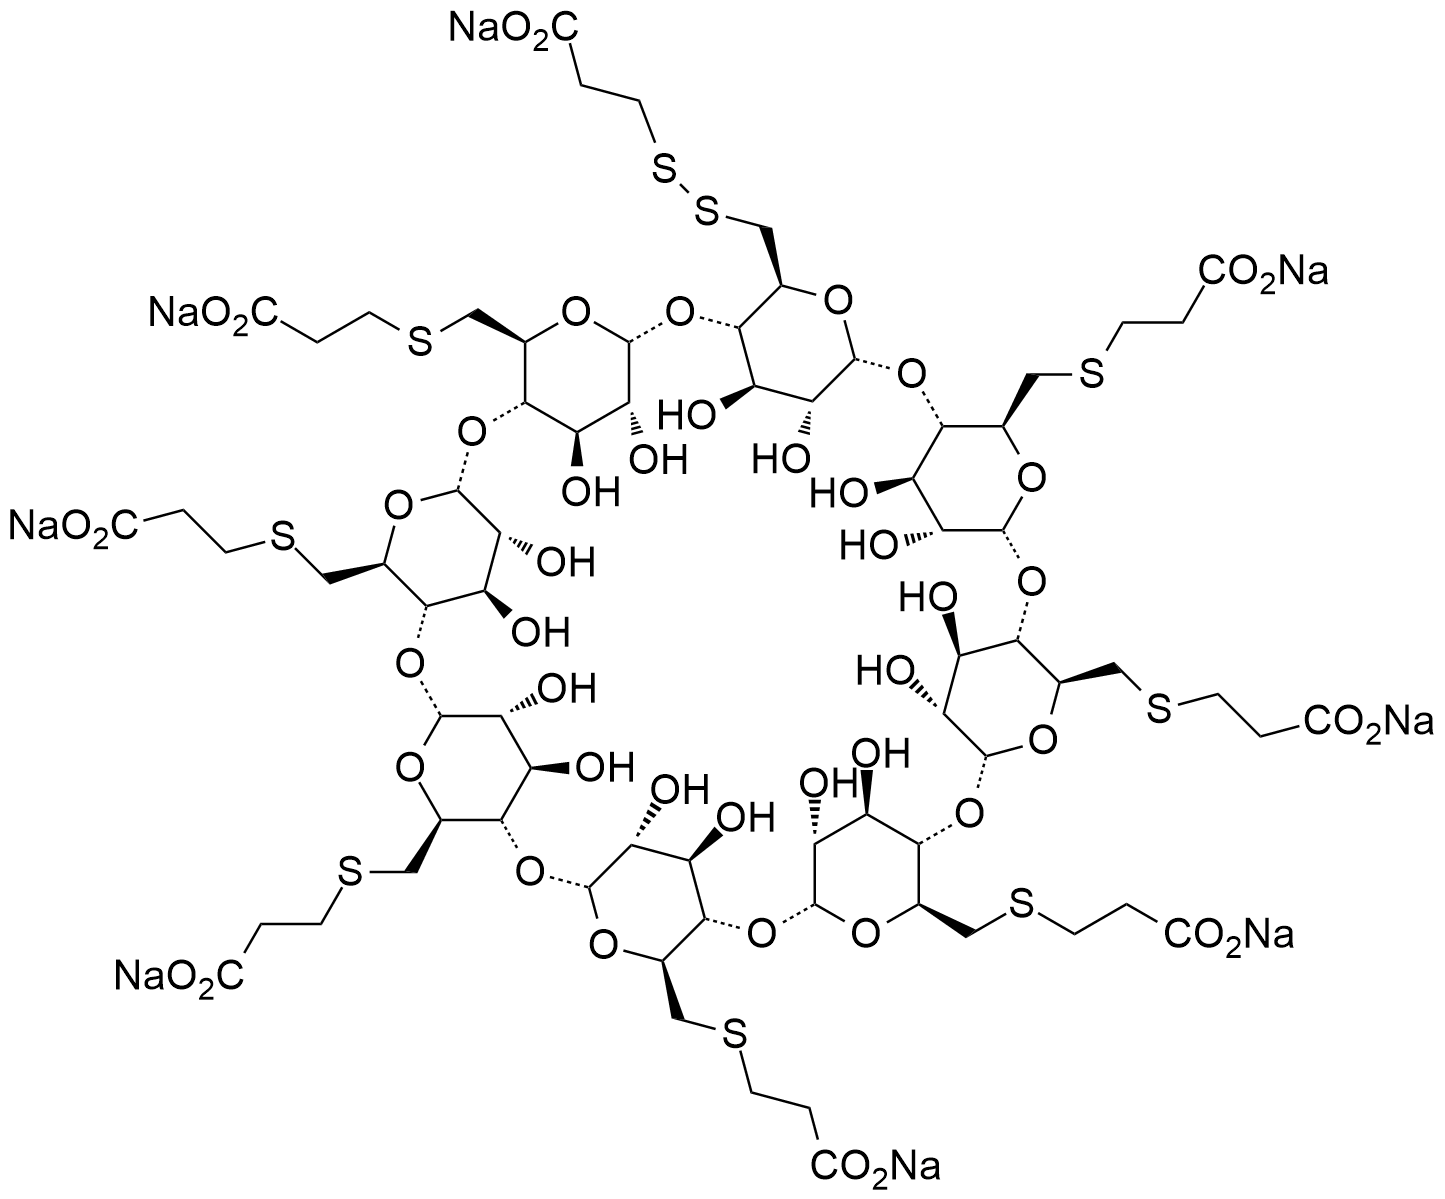 舒更葡糖钠Org199074-1杂质,Sugammadex sodium Org199074-1 Impurit